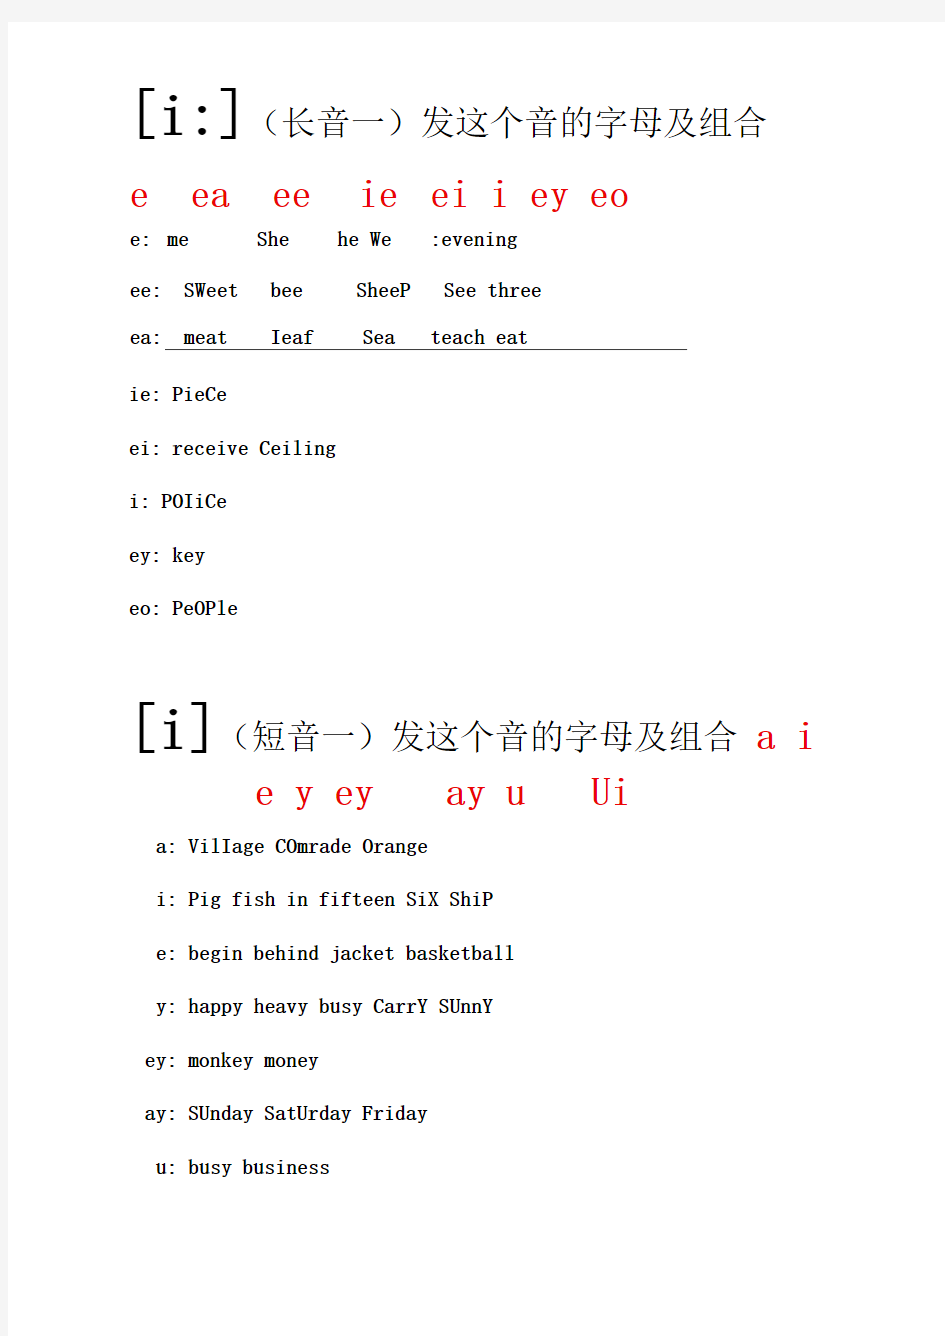 英语音标及字母组合发音对照(精心排版,可直接打印)